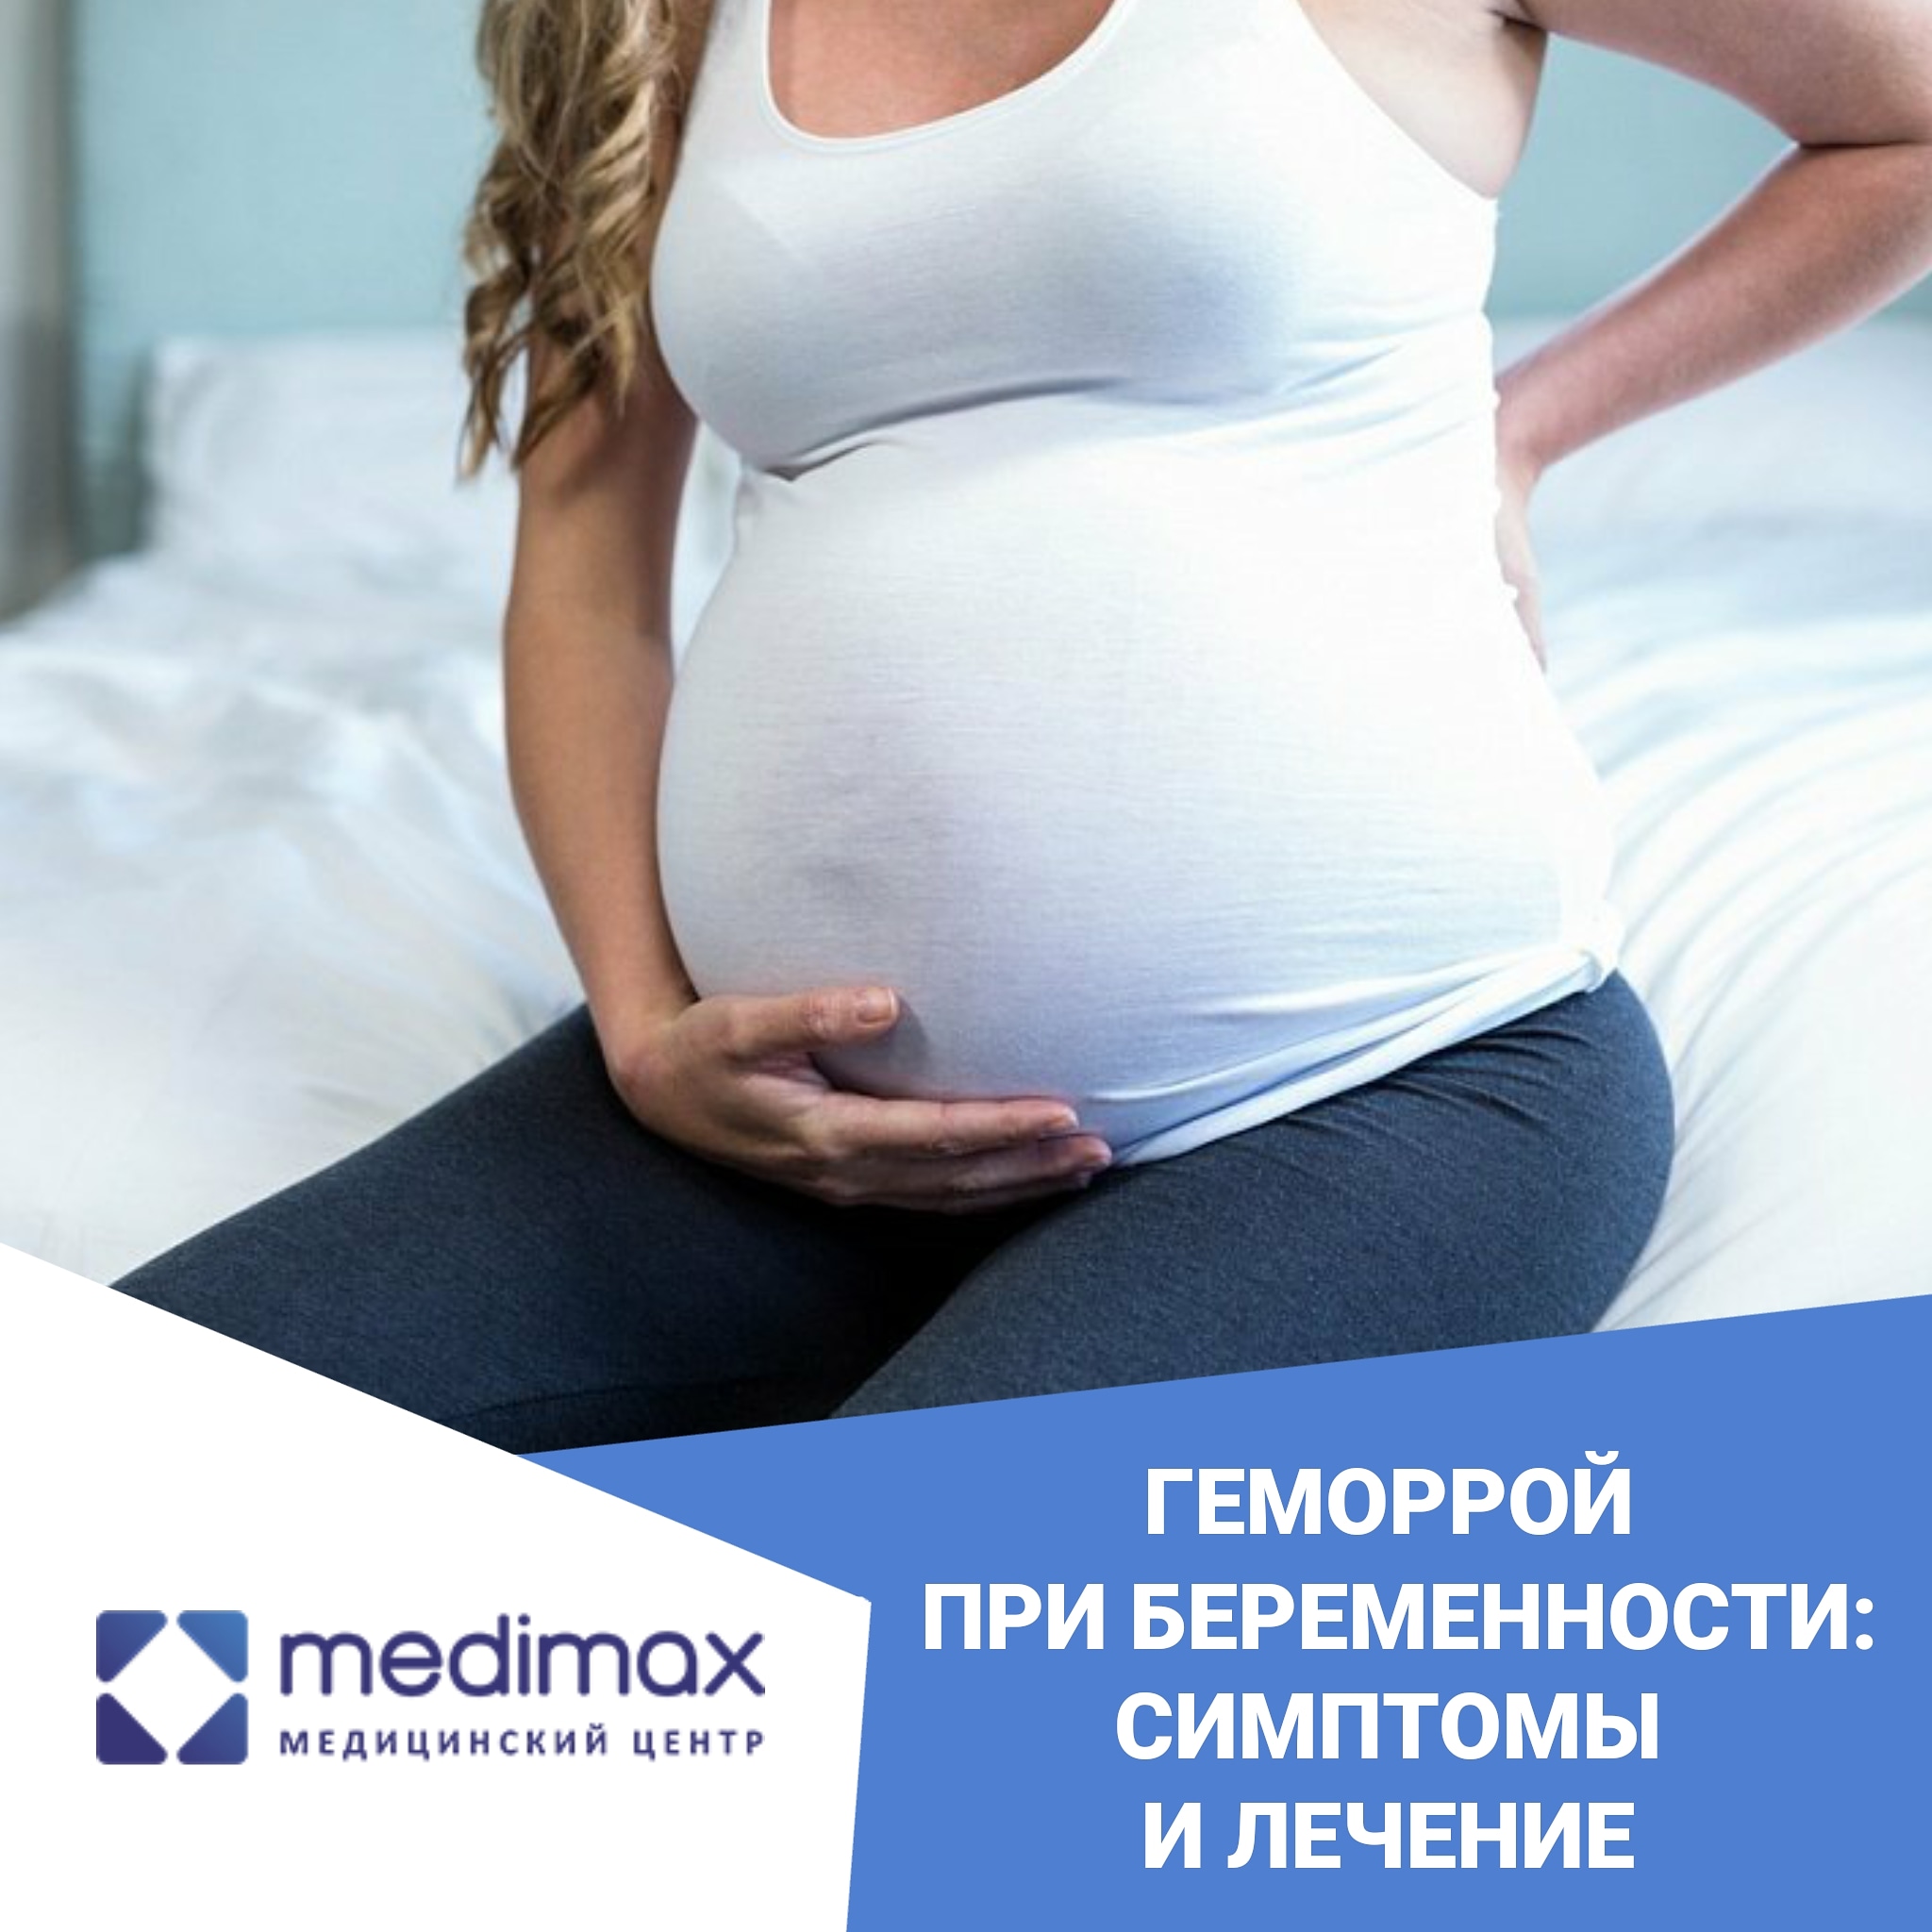 Геморрой при беременности: симптомы и лечение